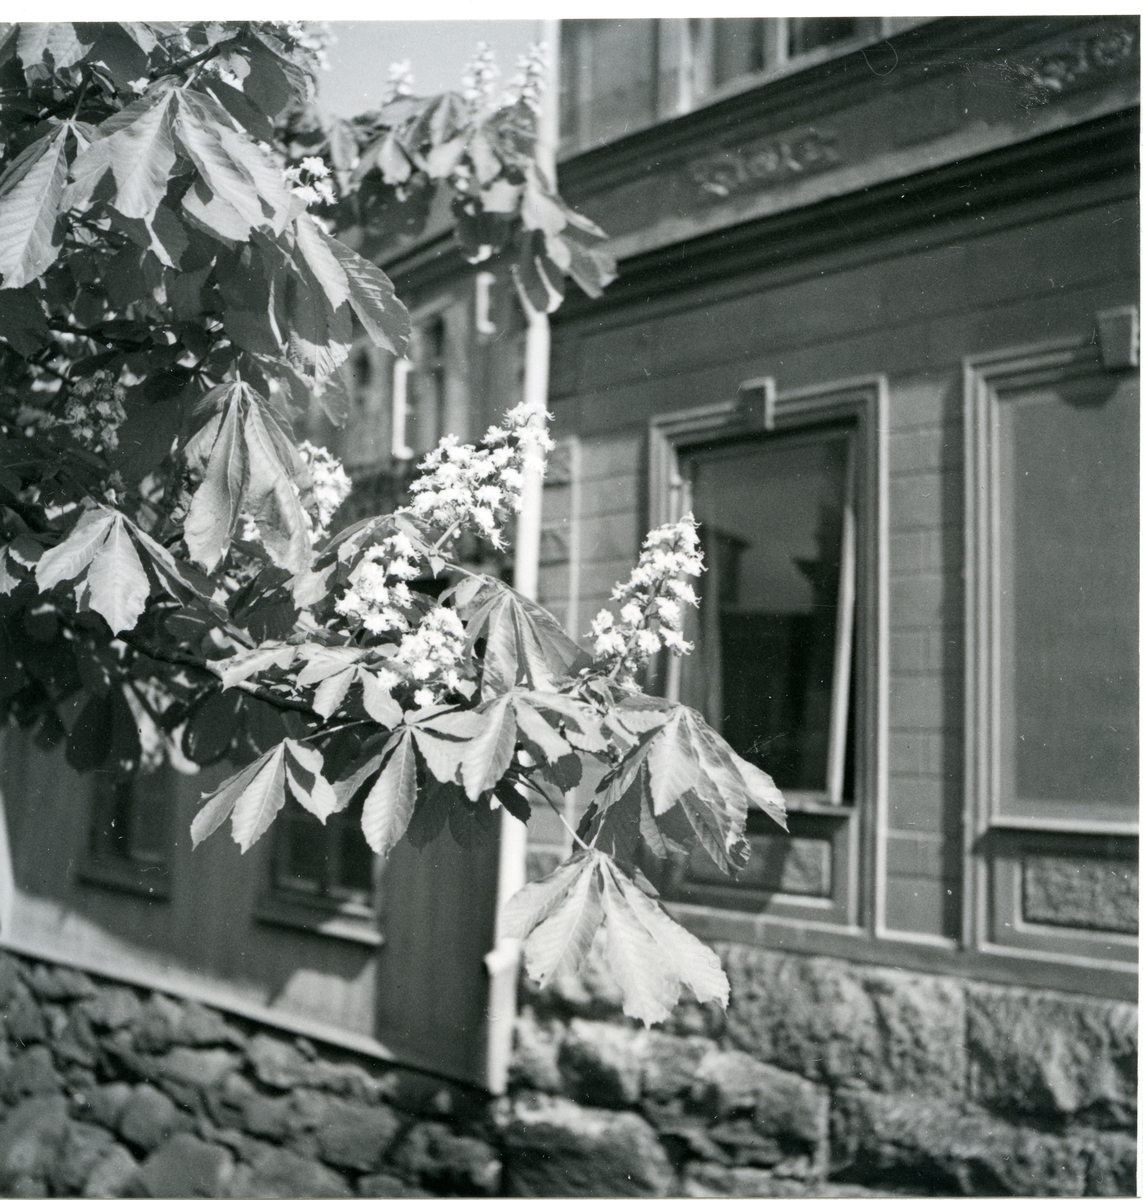 Västerås.
Grenar av blommande hästkastanj framför byggnad.